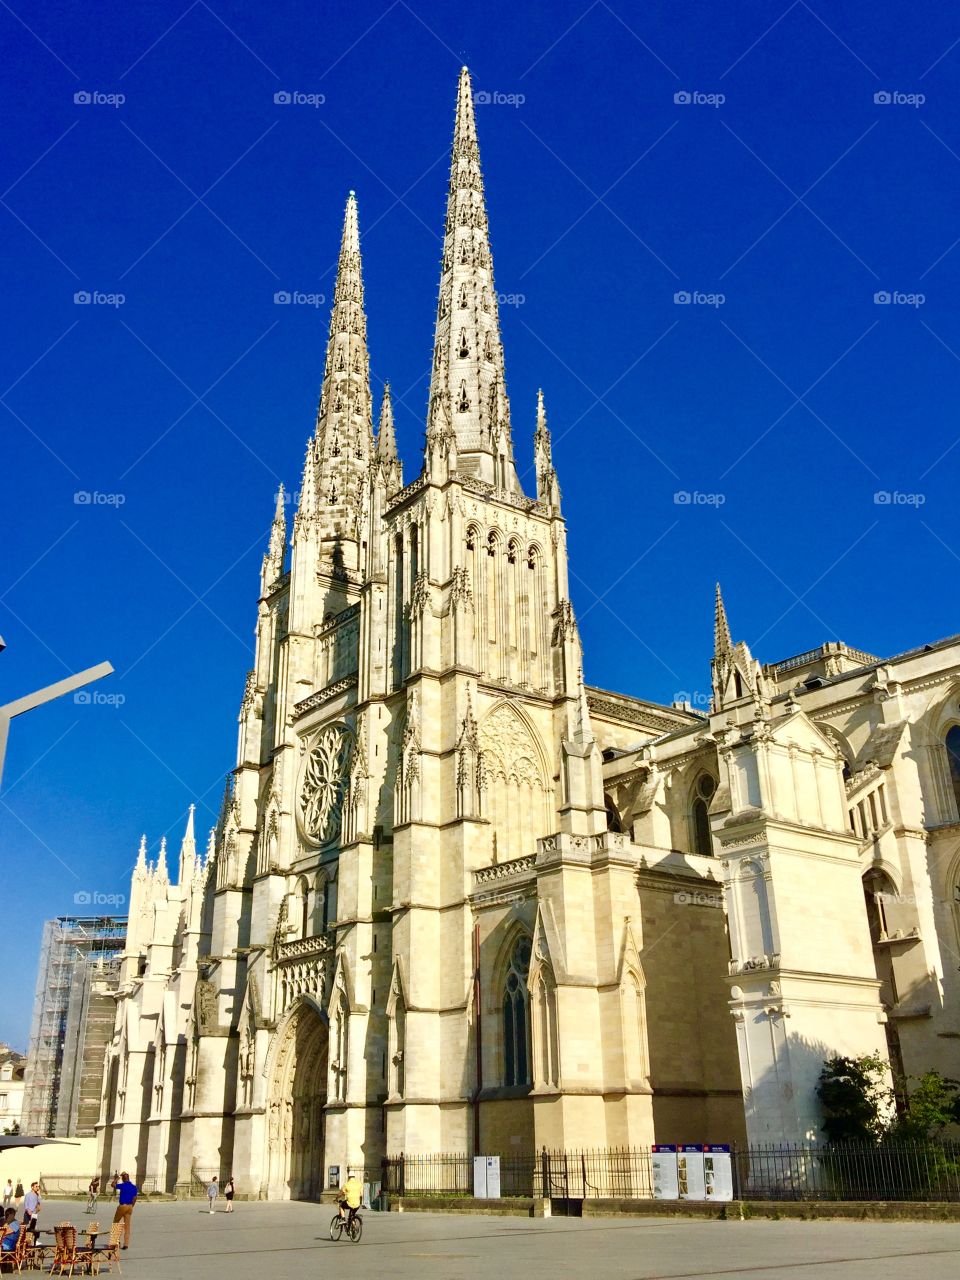 Cathedral La Sagrada Famiglia in Barcelona 